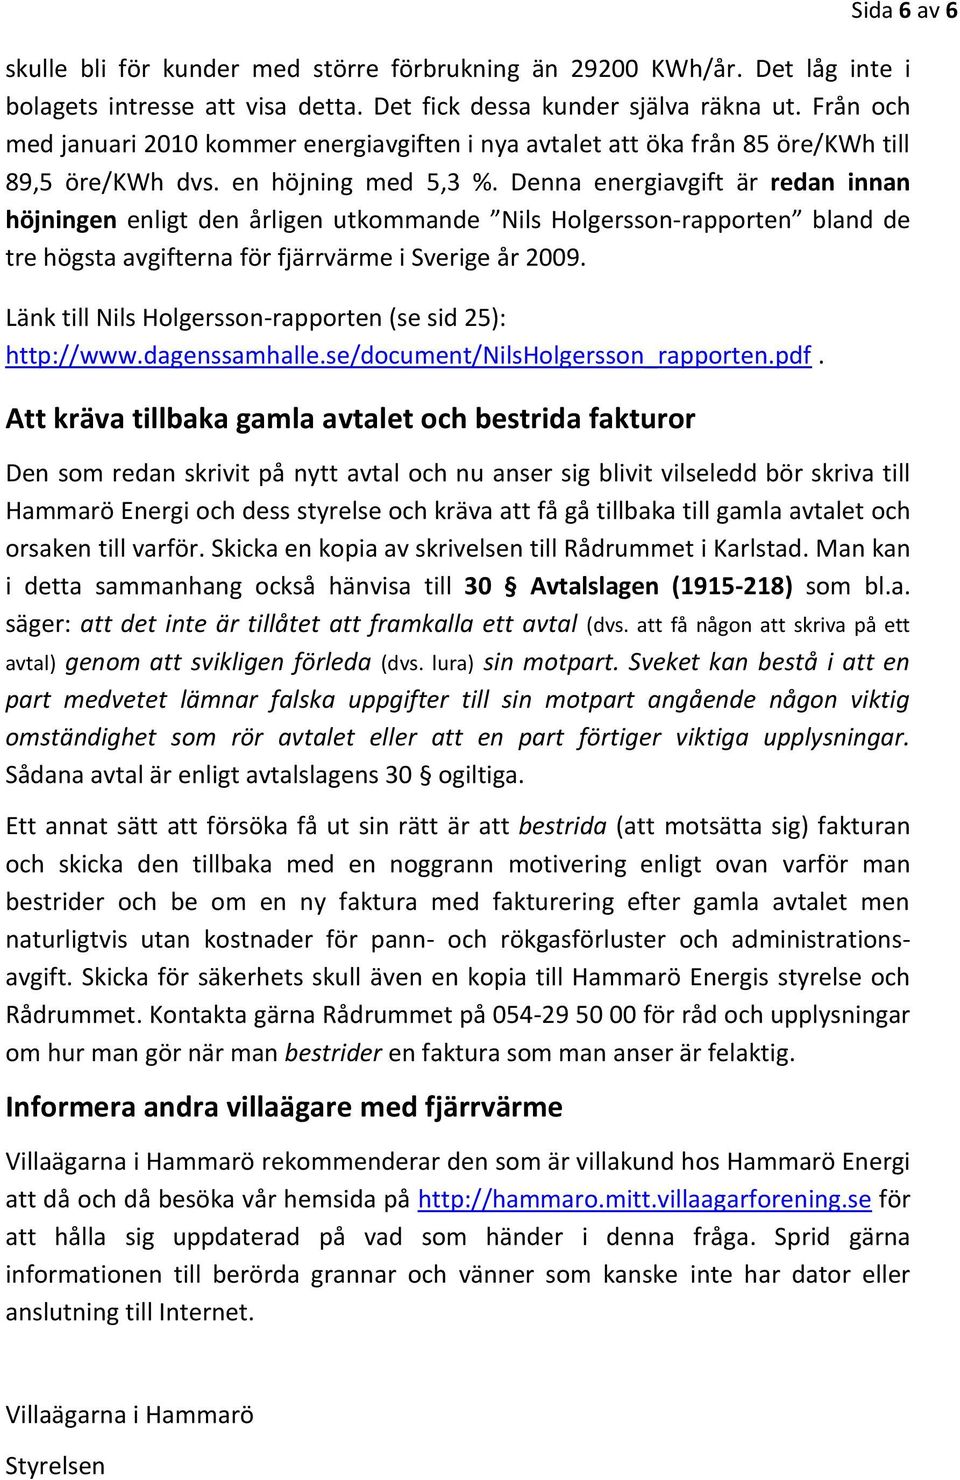 Denna energiavgift är redan innan höjningen enligt den årligen utkommande Nils Holgersson-rapporten bland de tre högsta avgifterna för fjärrvärme i Sverige år 2009.